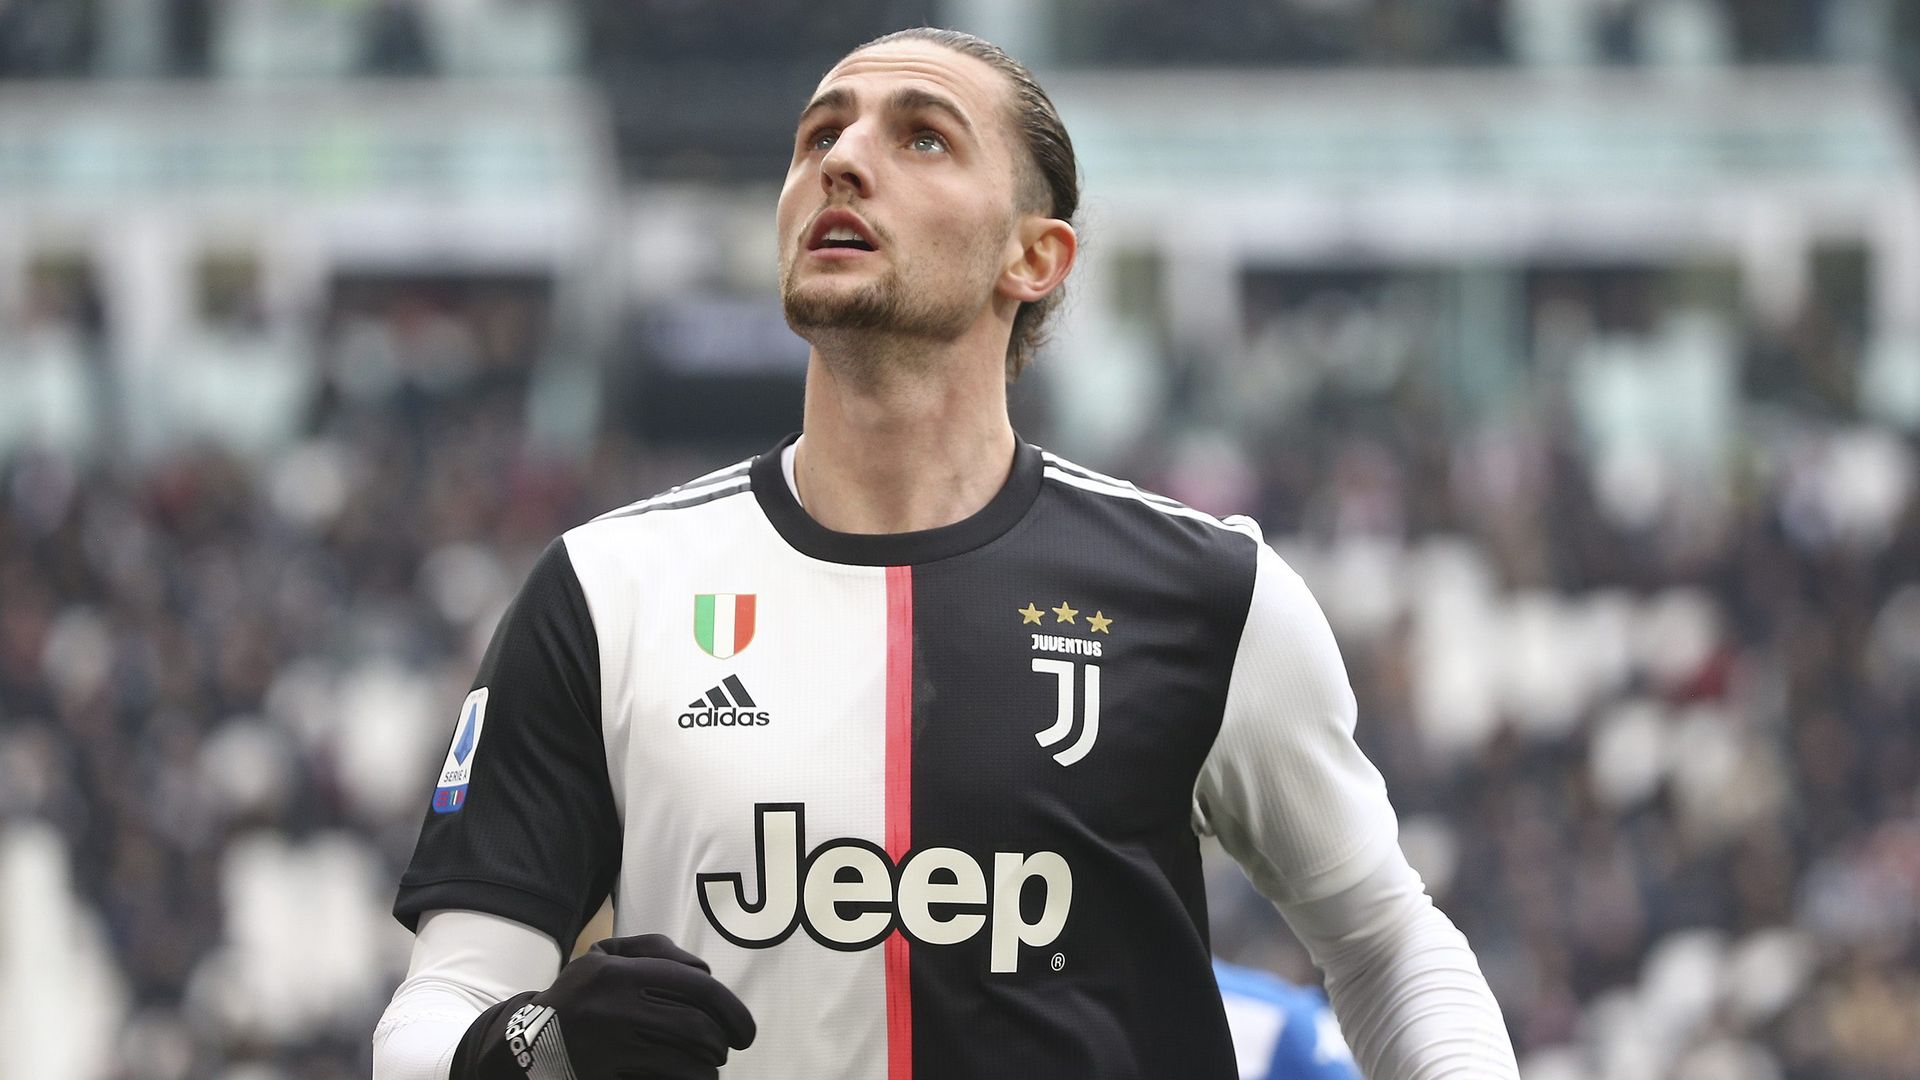 Juventus de Turín | Las posibles vías de escape para Adrien Rabiot